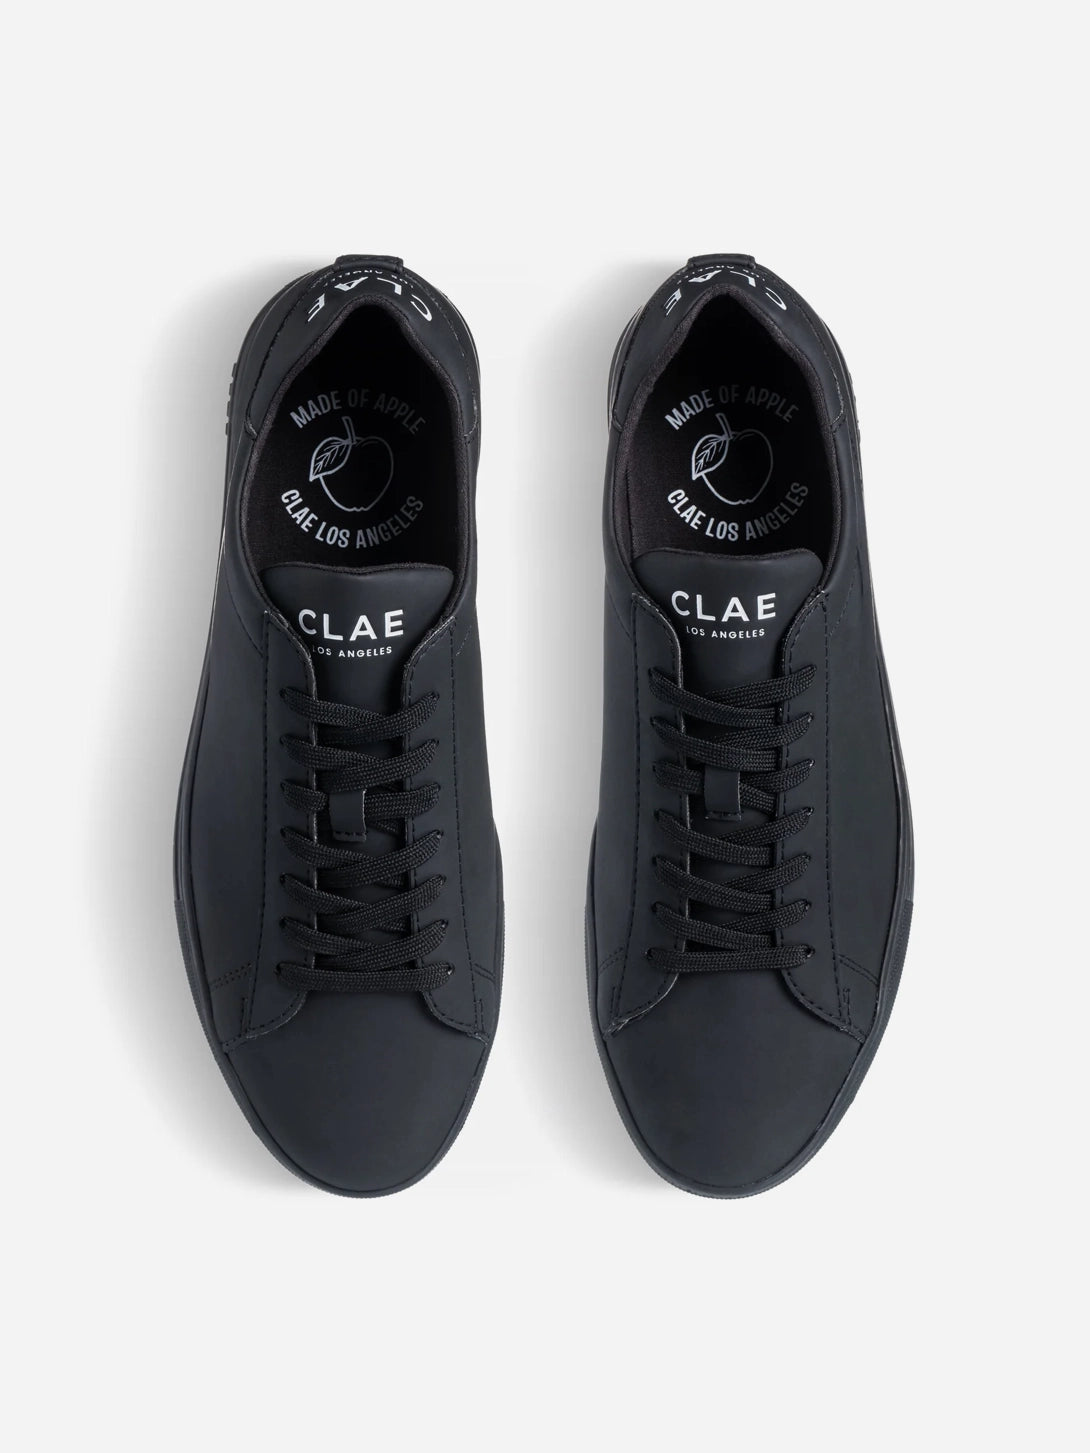 Triple Black Apple Bradley Clae Vegan Leather Sneakers